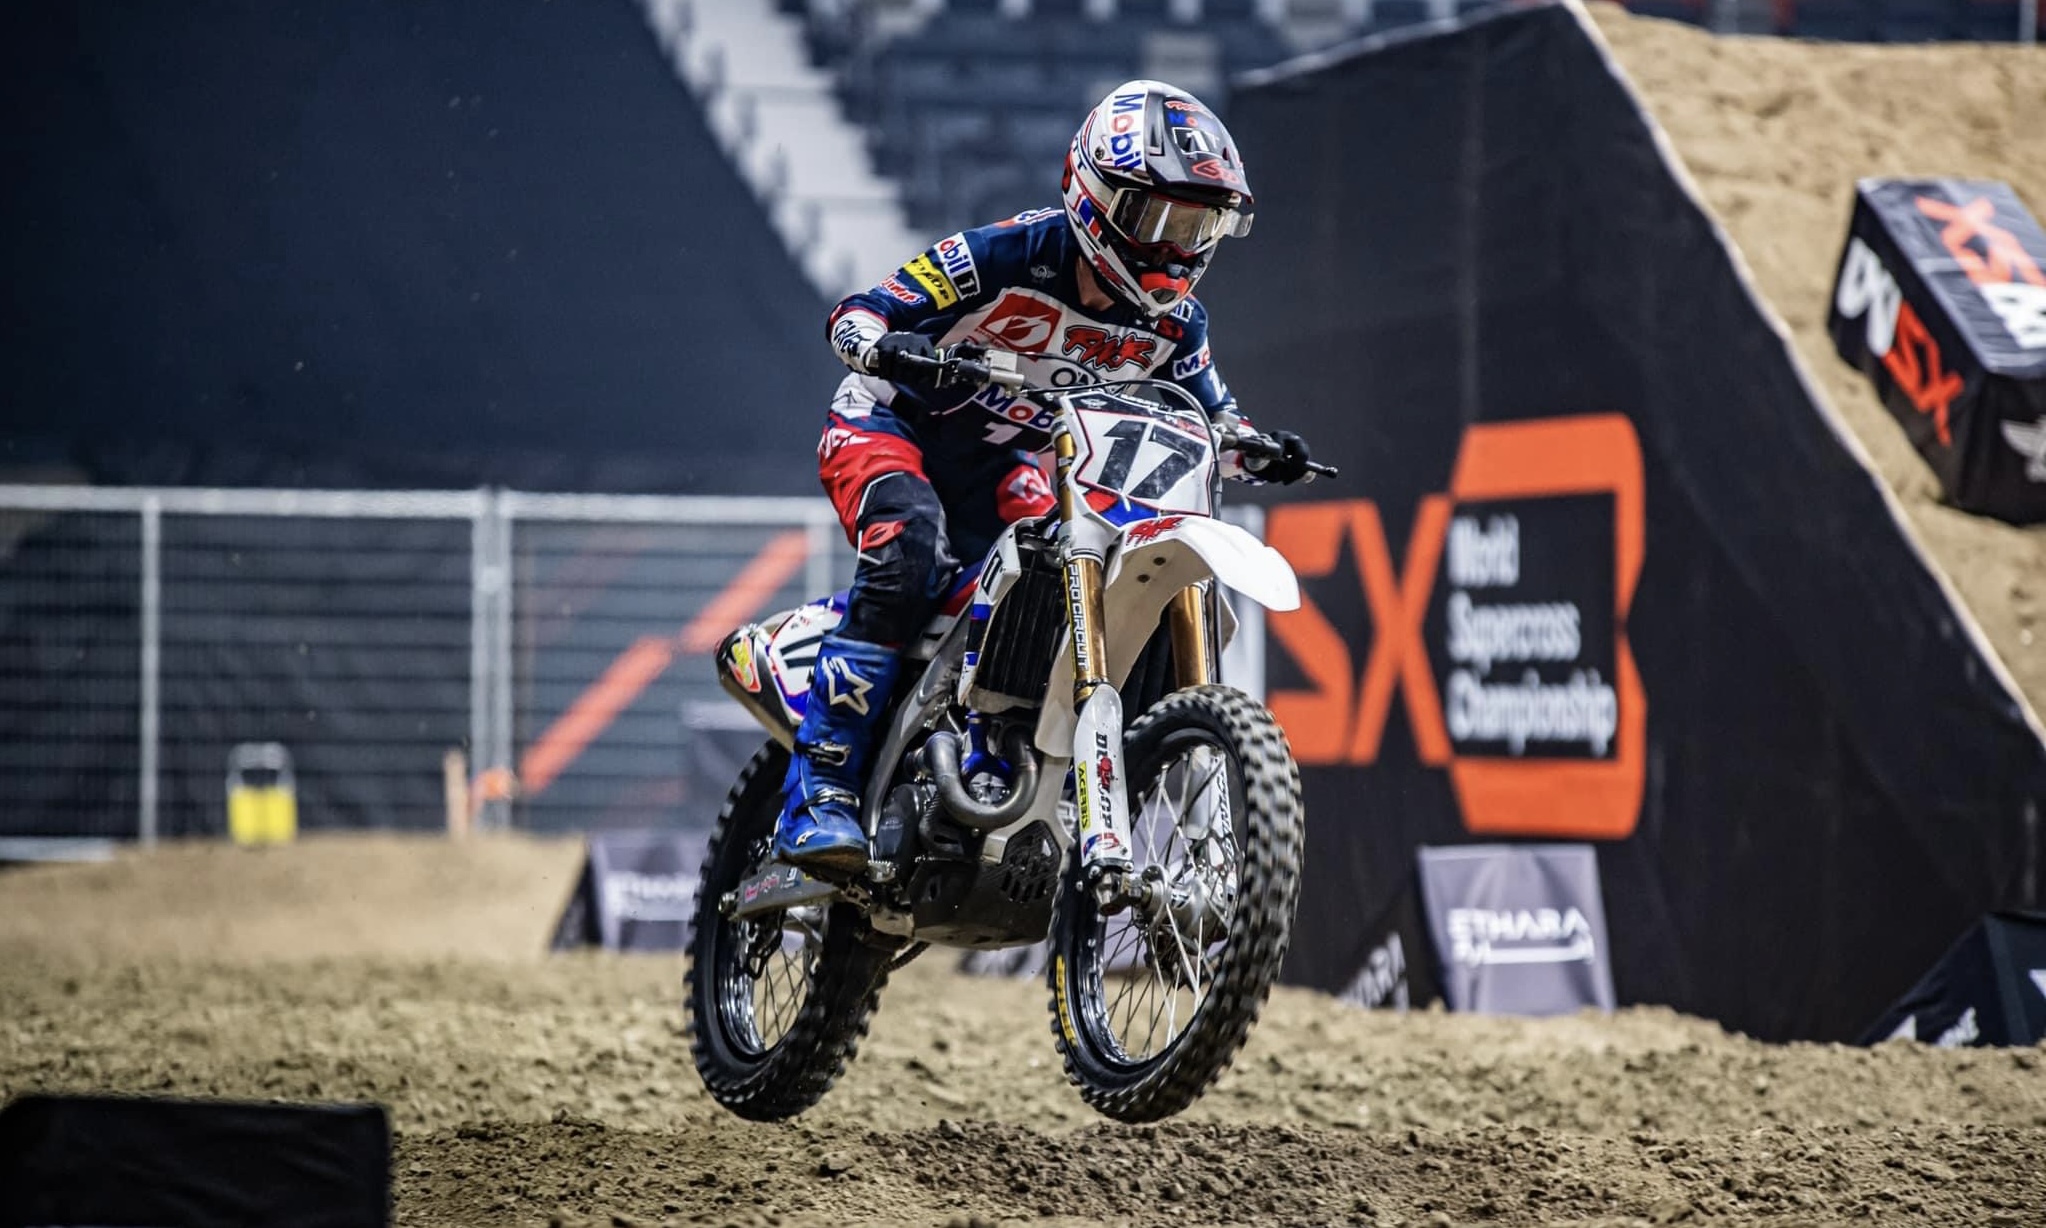 CN Motocross: Corridas com novo formato em 2022 - Offroadmoto